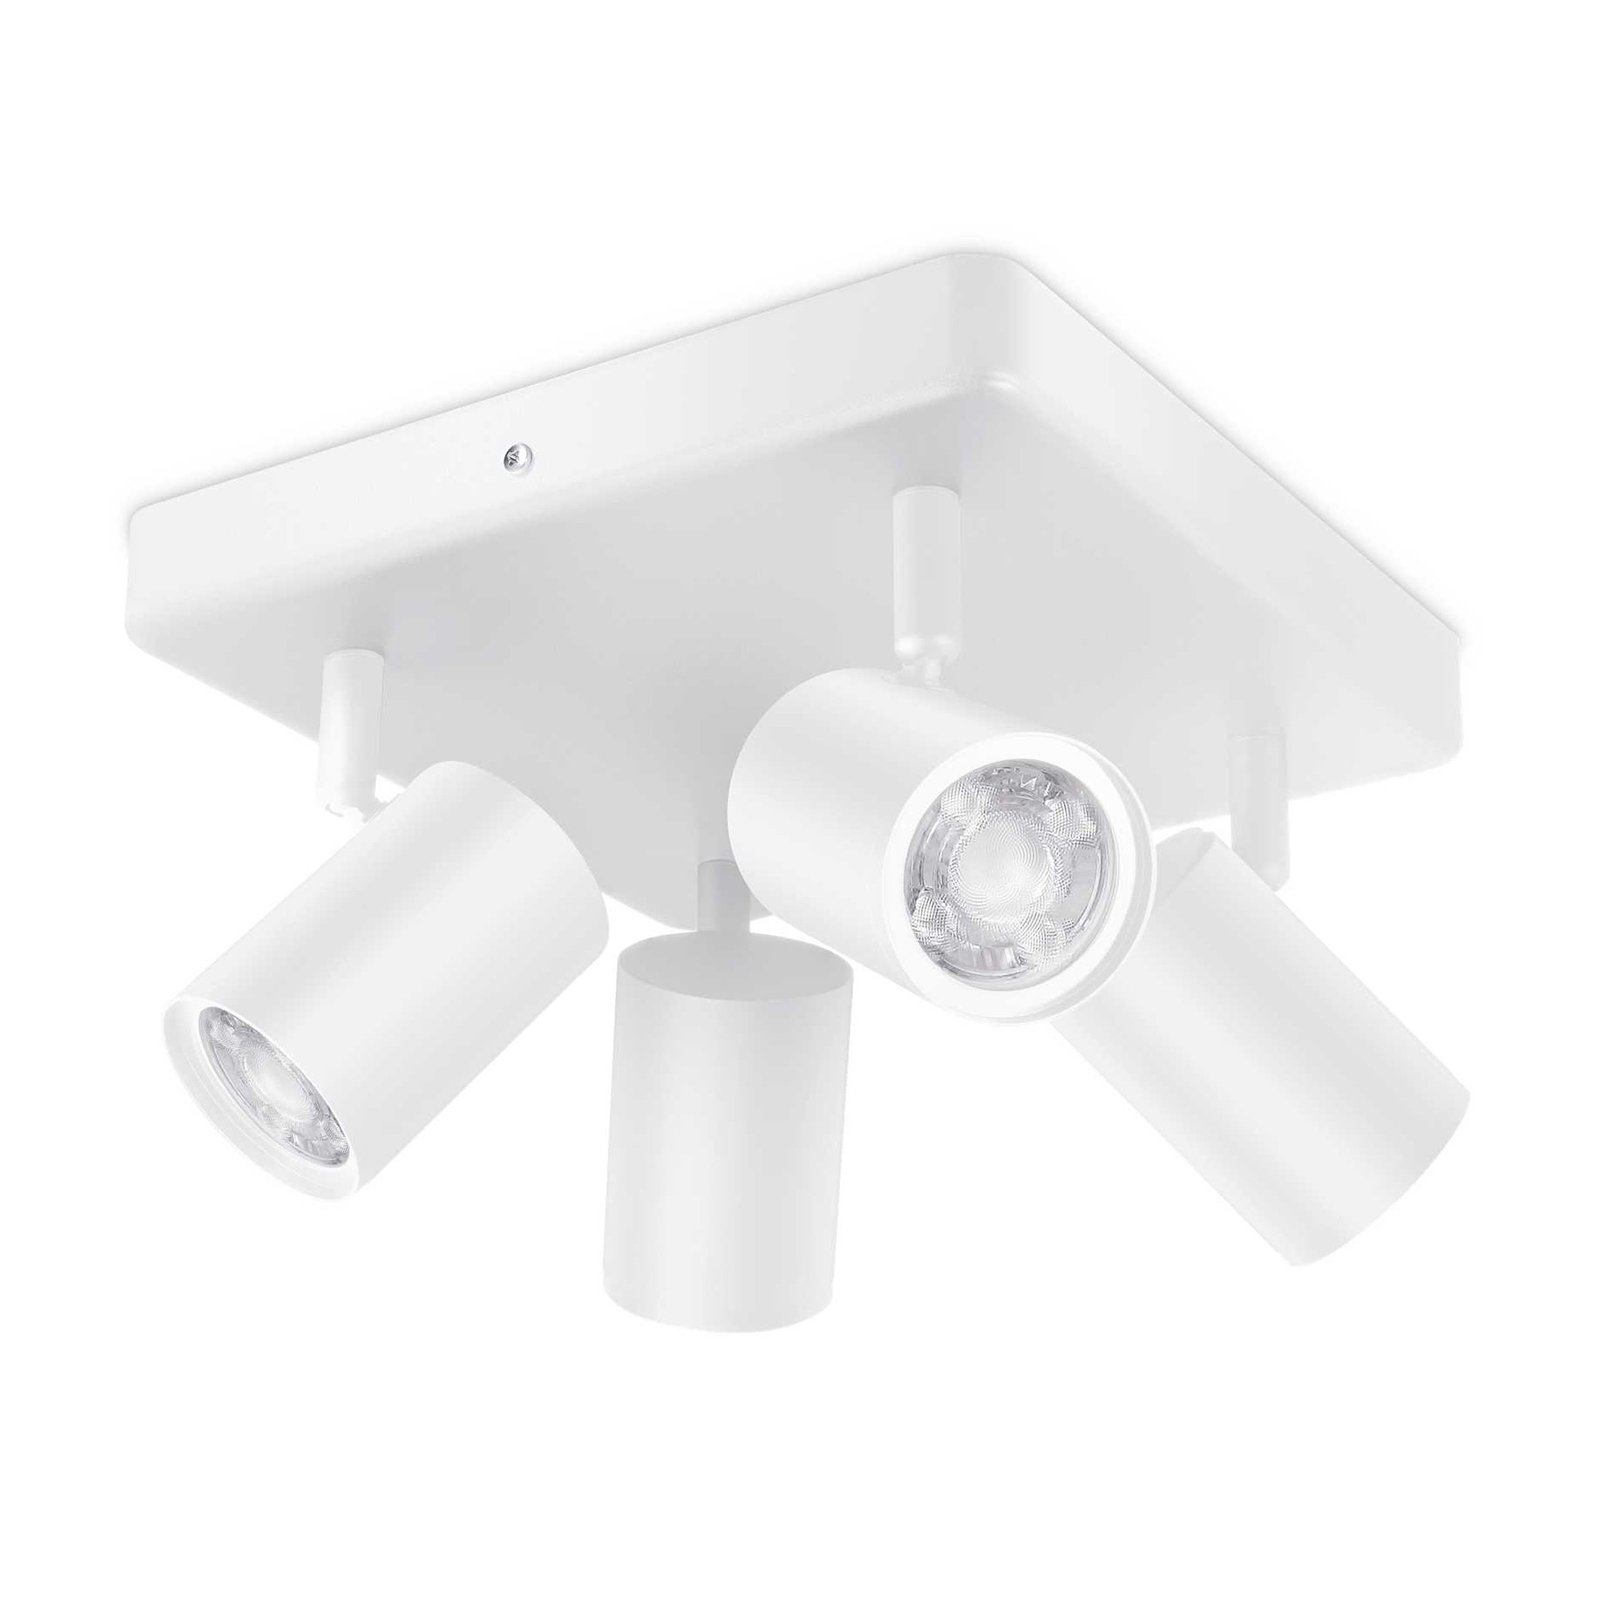 WiZ LED-kattospotti Imageo, 4fl neliön valkoinen